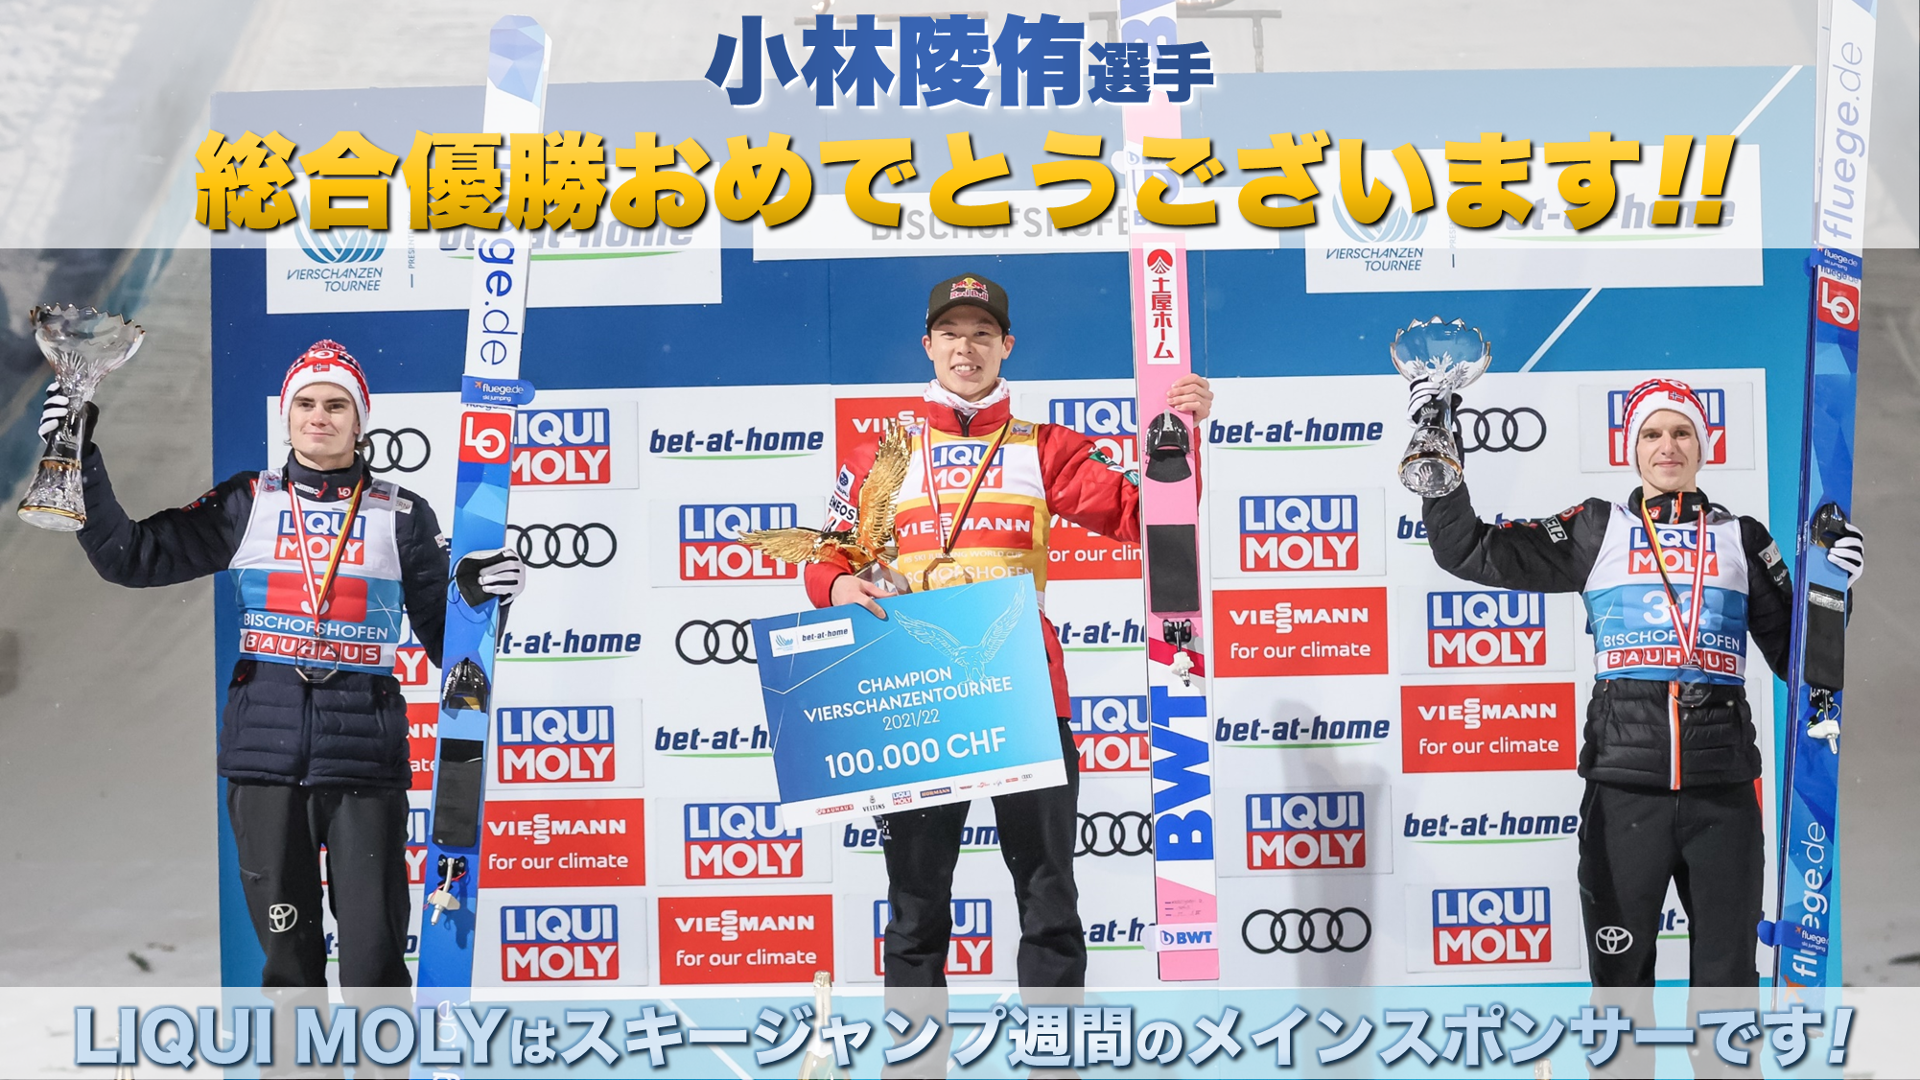 LIQUI MOLYメインスポンサー 伝統のジャンプ週間で日本の小林陵侑選手が総合優勝